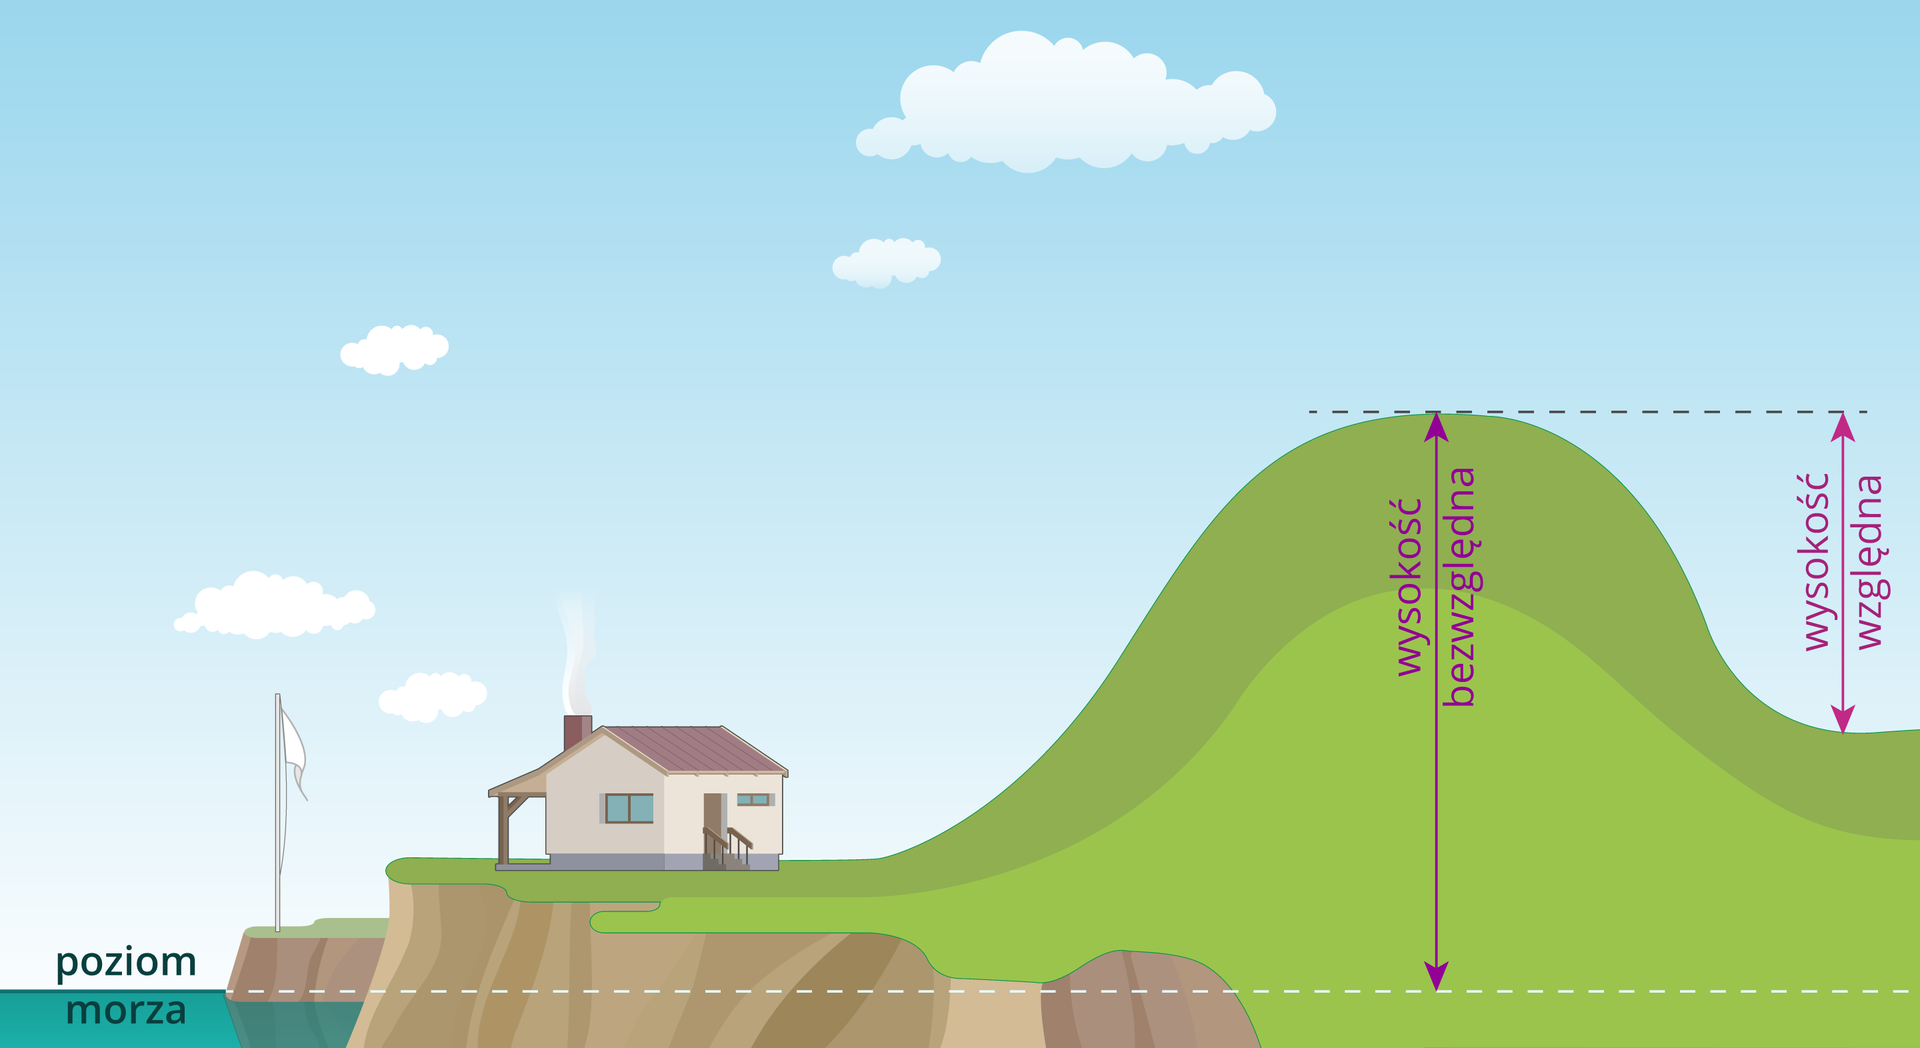 Ilustracja przedstawia sposób pomiaru wysokości względnej i bezwzględnej wzniesienia. Na ilustracji narysowana jest góra, po prawej stronie stoku góry znajduje się kotlina, po lewej stronie stoku góry znajduje się podnóże, na którym stoi dom. Na lewo od domu, poniżej podnóża góry, zaznaczono linią poziom morza. Linia poziomu morza biegnie przez całą ilustrację. Na rysunku góry zaznaczono wysokość bezwzględną, która jest poprowadzona od linii poziomu morza do szczytu góry. Wysokość względna jest zaznaczona od dna doliny do szczytu wzniesienia.